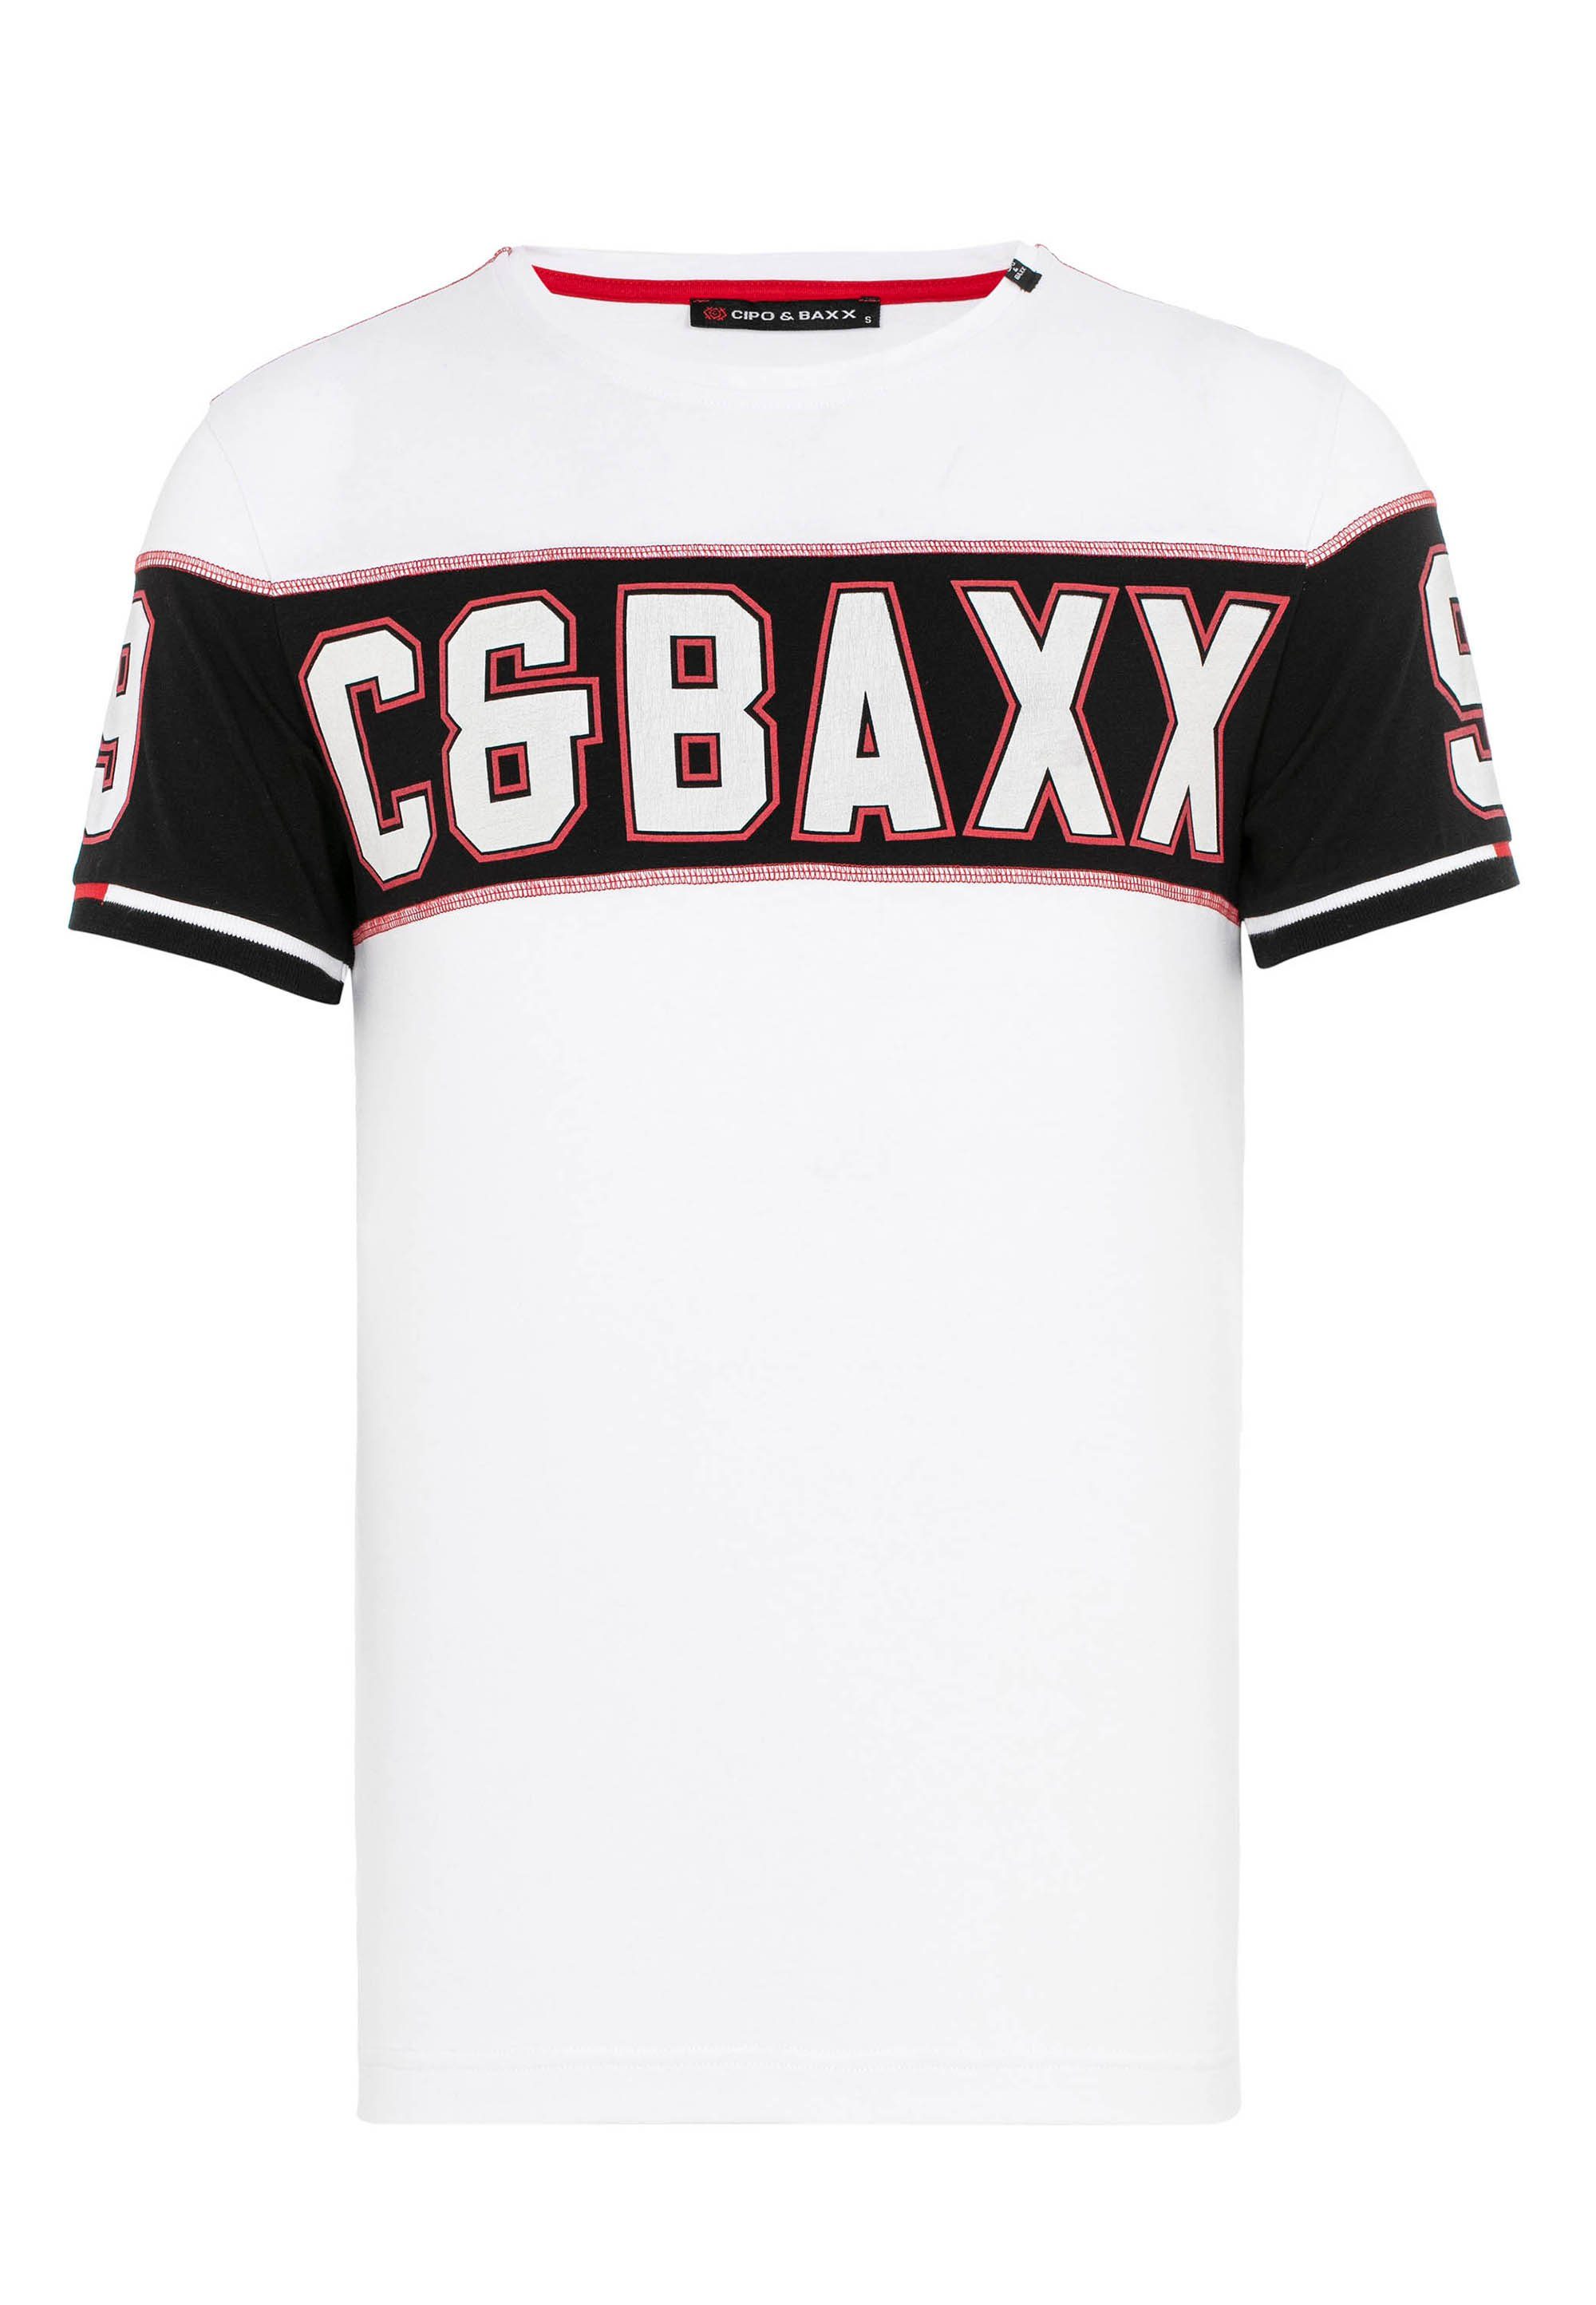 T-Shirt weiß & Print mit Baxx Cipo auffälligem